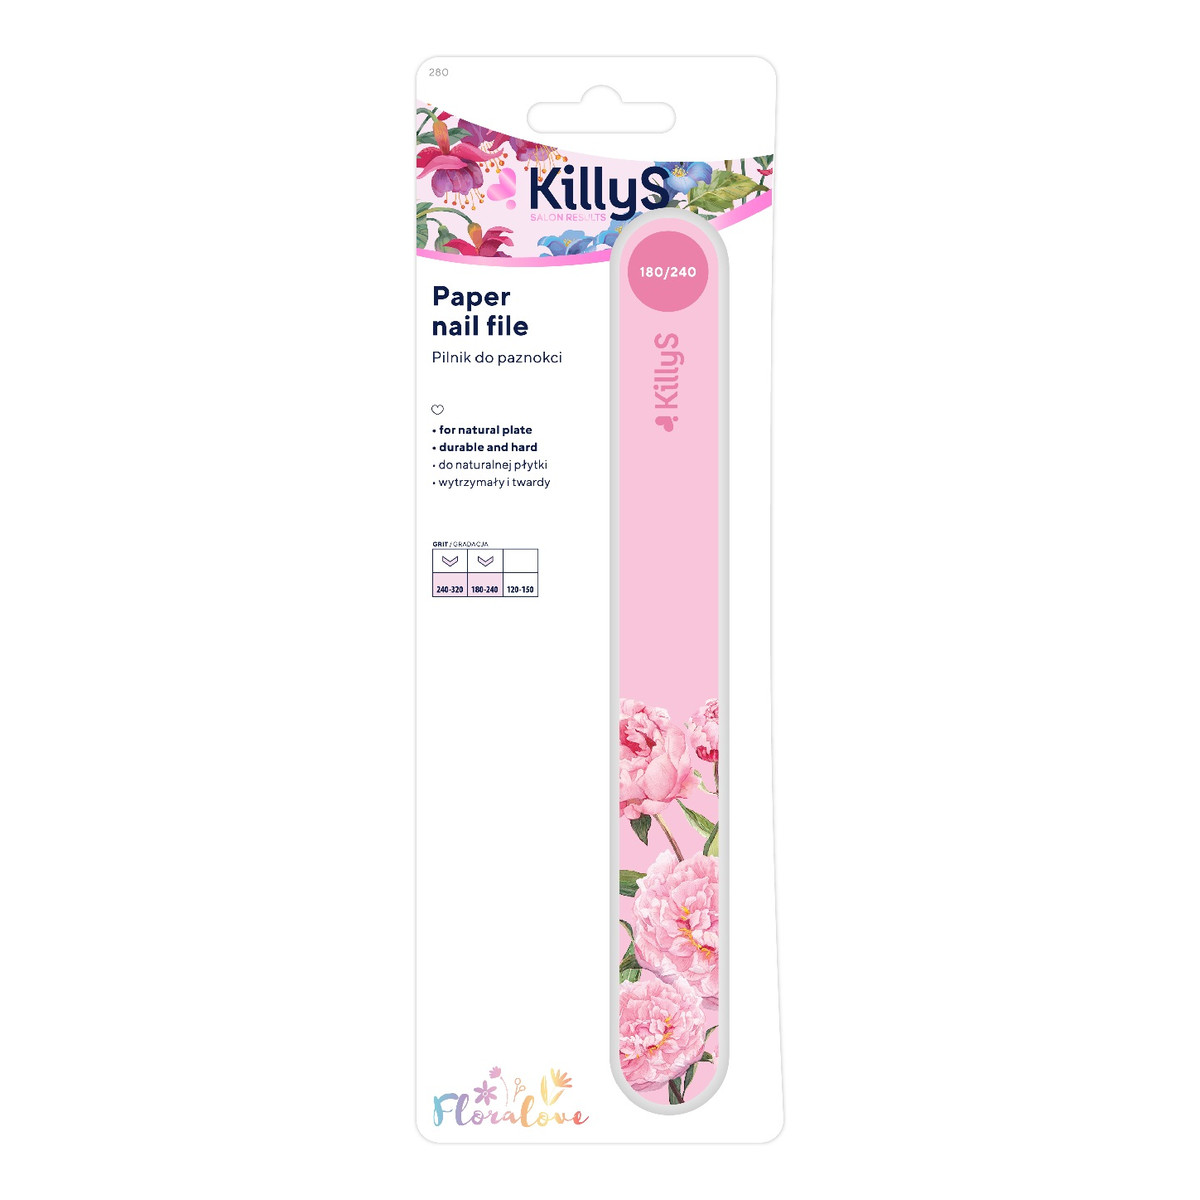 KillyS Floralove Pilnik do paznokci różowy prosty 180/240